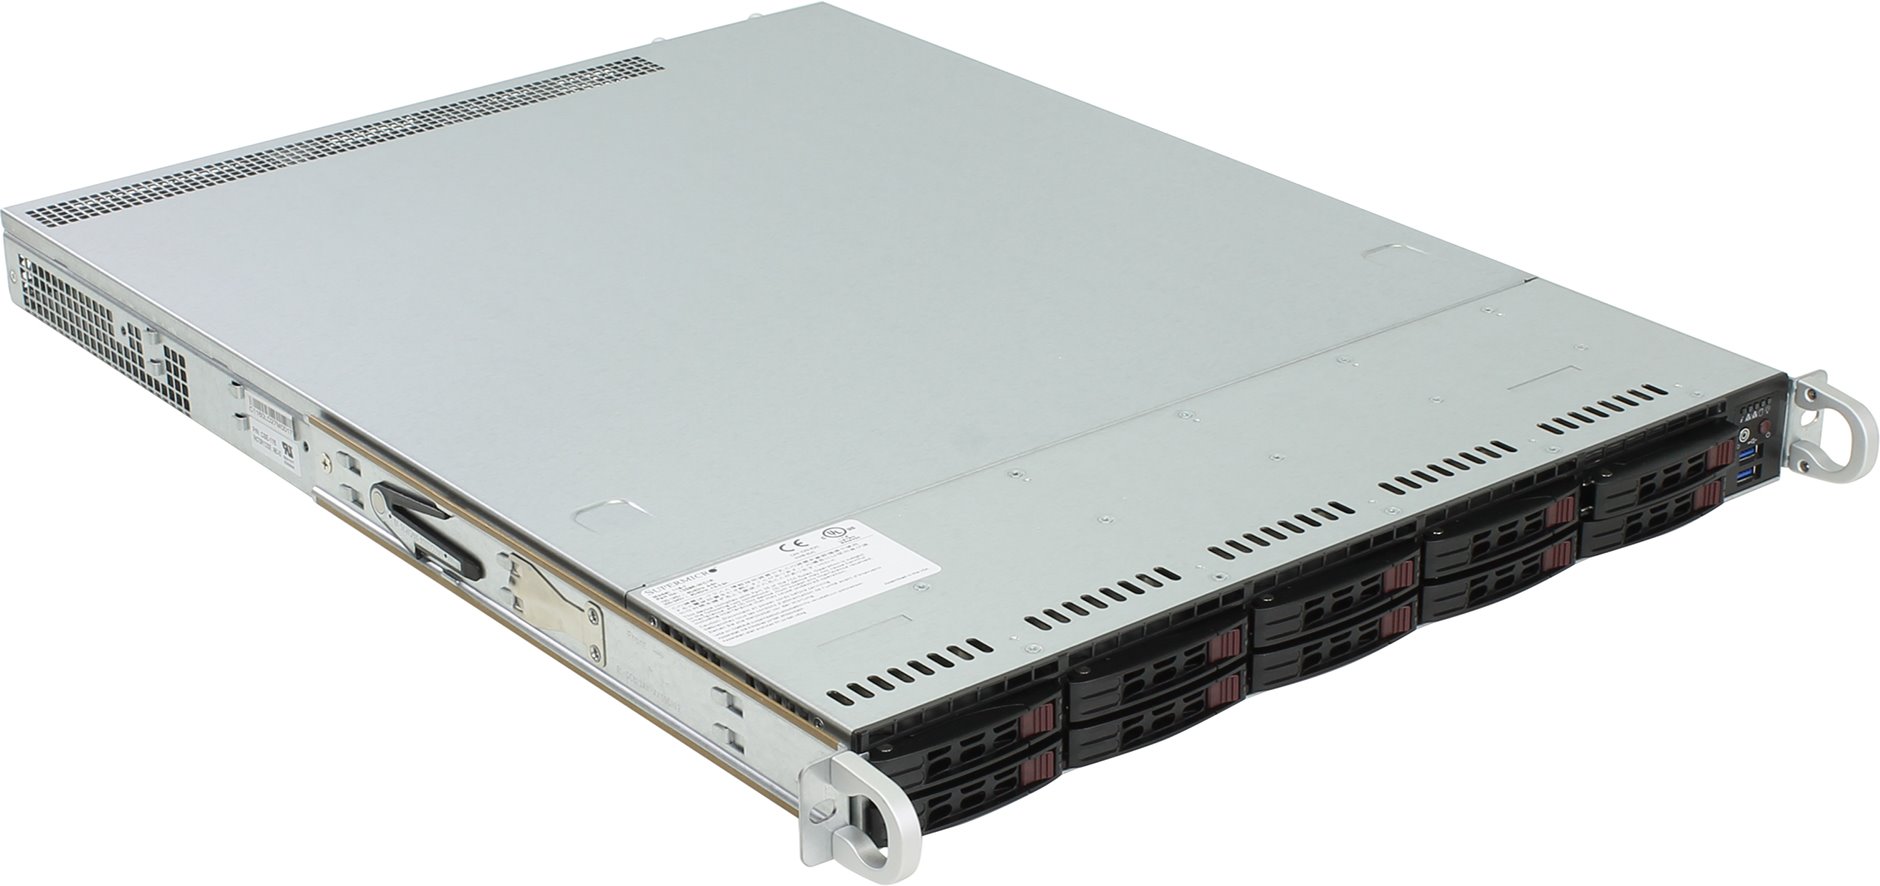 Серверная платформа SuperMicro SYS-1029P-WT, 1U, 2 x LGA3647, Intel C621, 12 x DDR4, 8 x 2.5" SATA, 2xGigabit Ethernet (1000 Мбит/с), 600 Вт